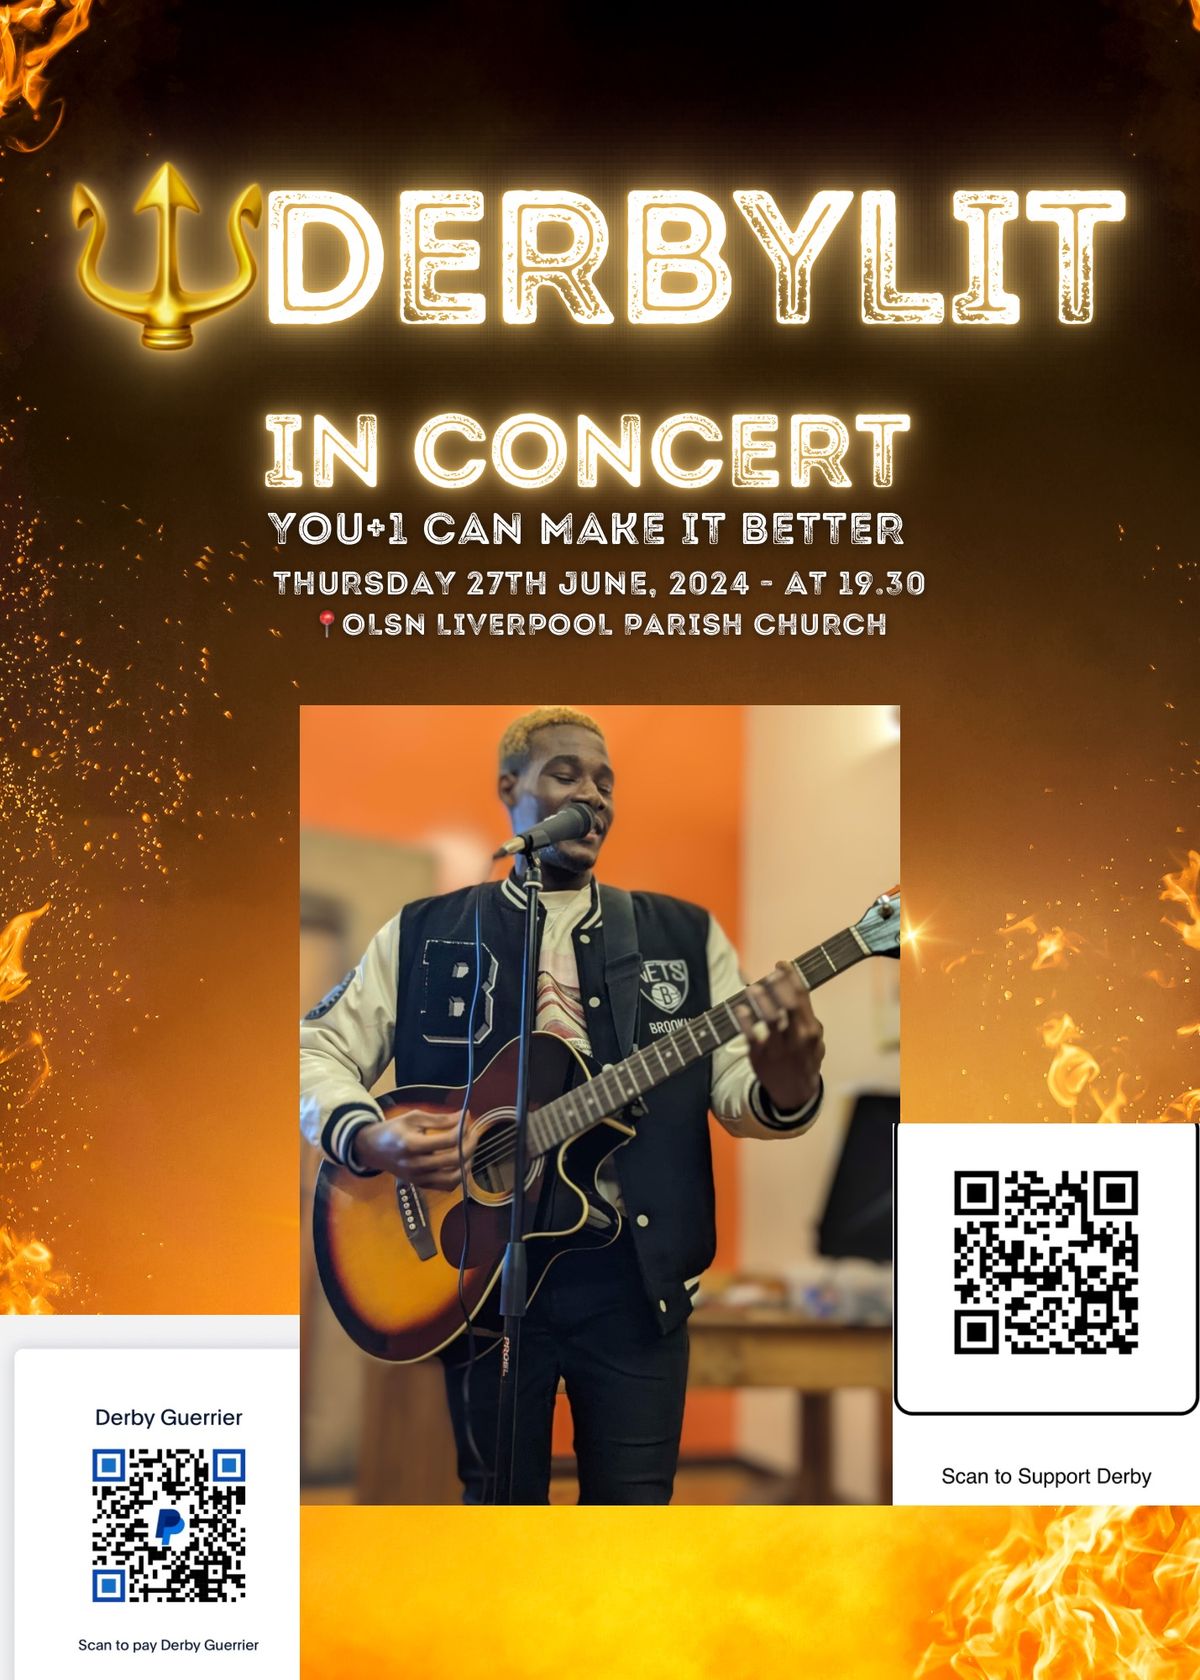 DerbyLit in concert 